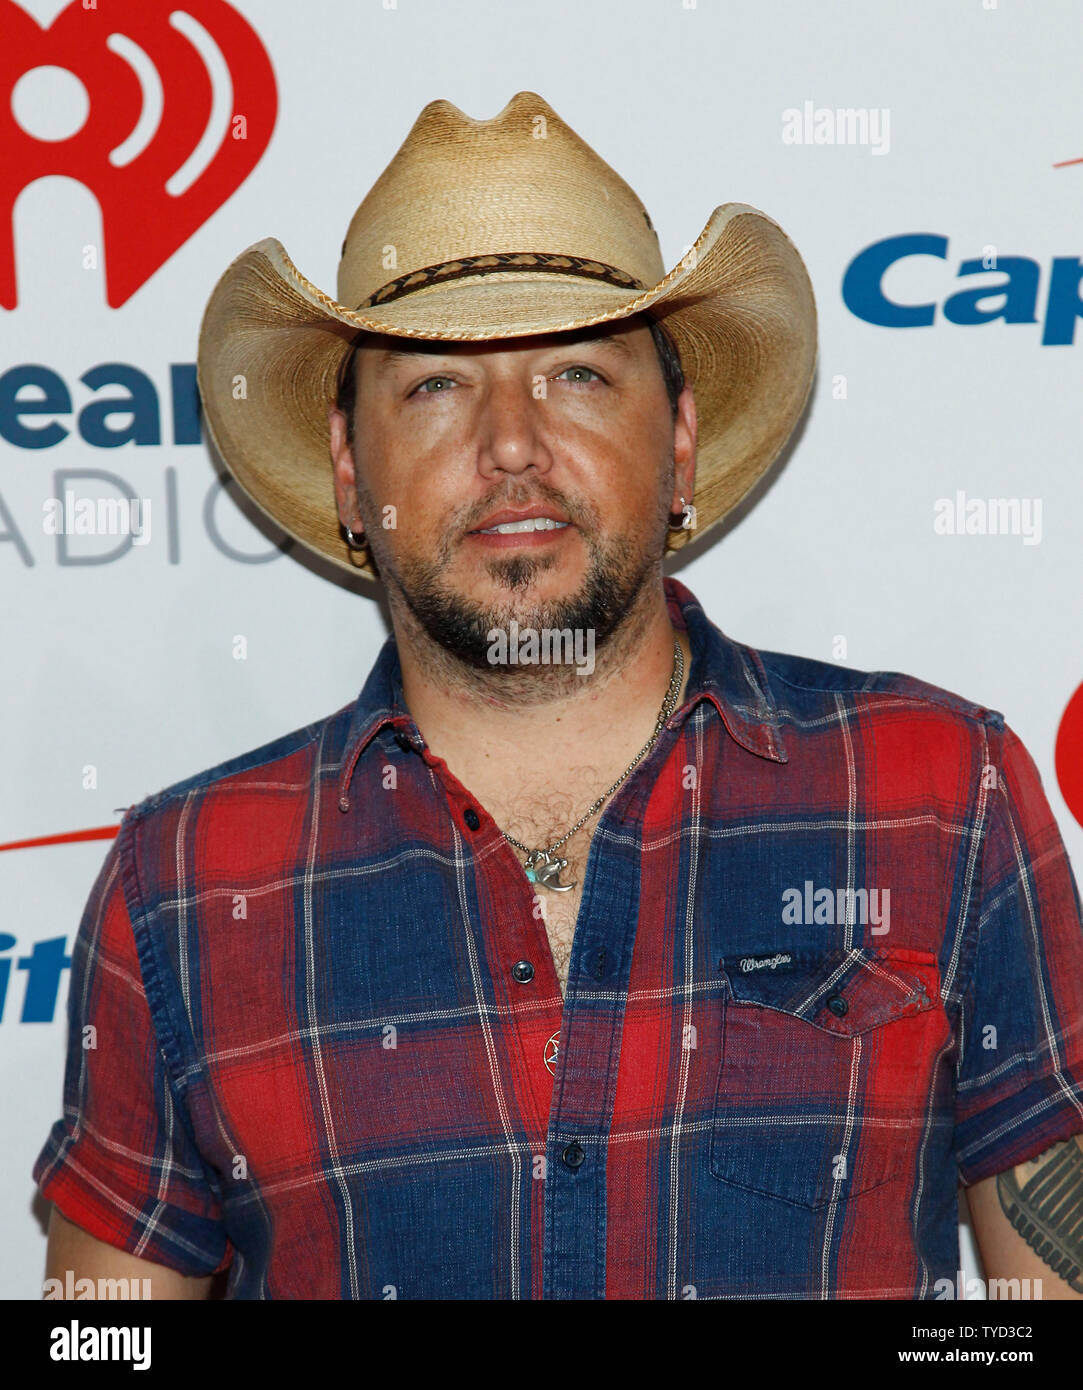 Country Music Artist Jason Aldean kommt für die iHeartRadio Musikfestival auf der T-Mobile Arena in Las Vegas, Nevada am 21. September 2018. Foto von James Atoa/UPI Stockfoto